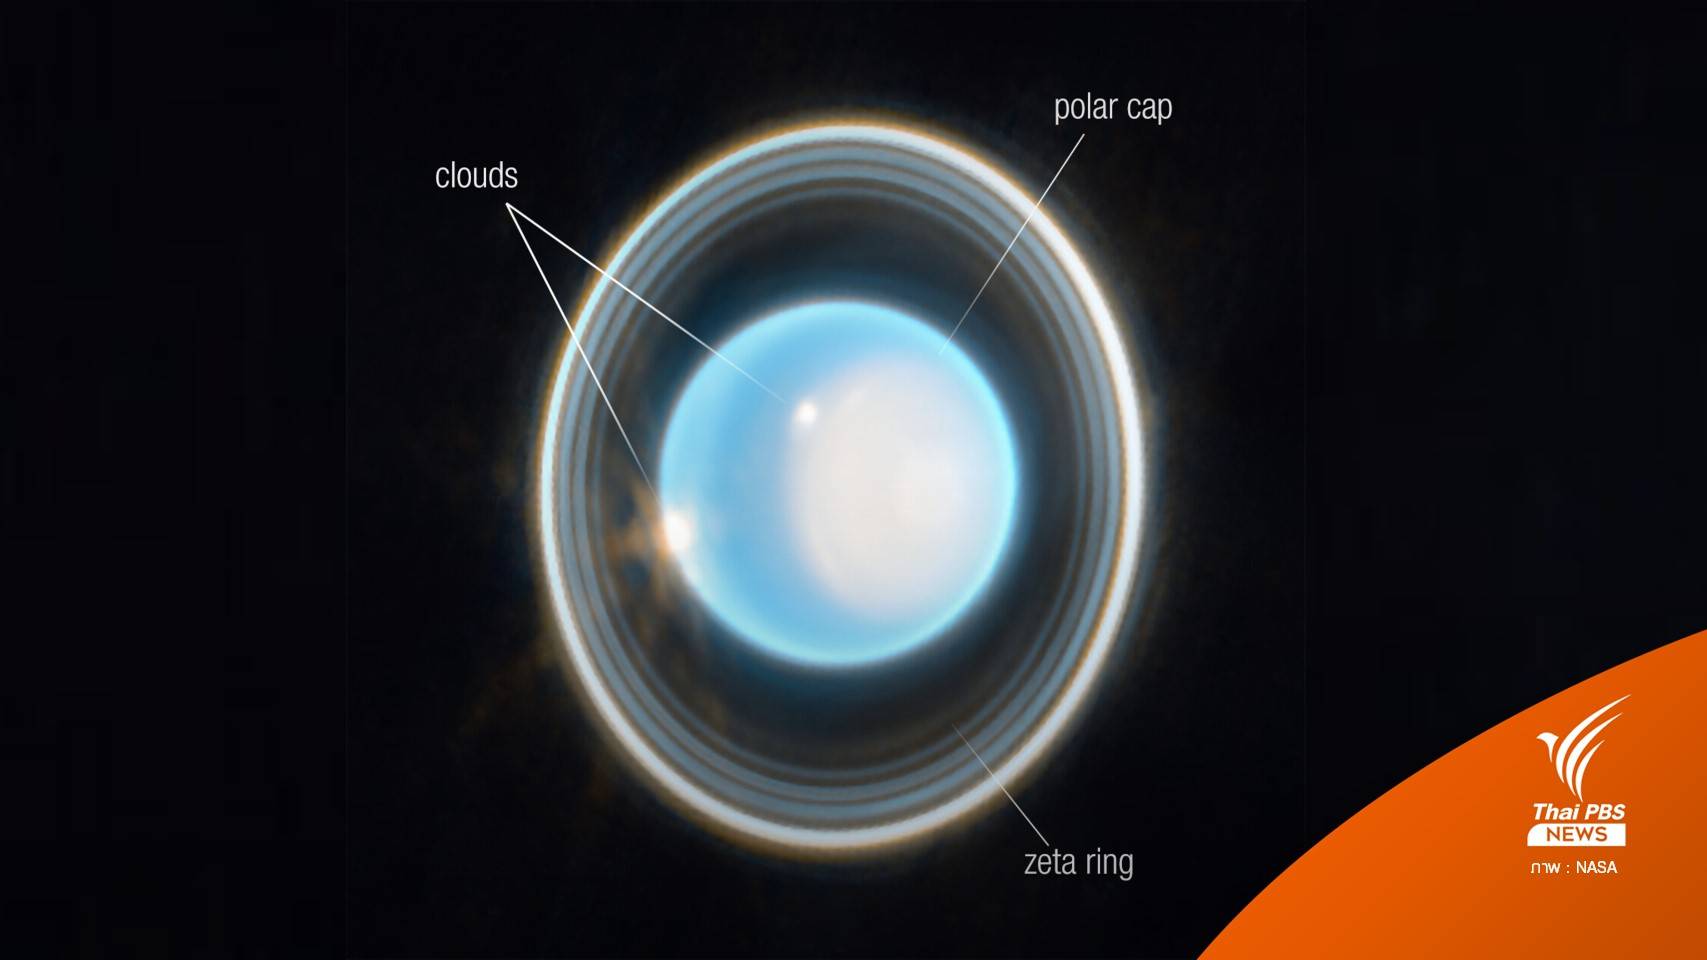 เห็นวงแหวนสุดคมชัด ภาพ "ดาวยูเรนัส" จากกล้องเจมส์ เว็บบ์